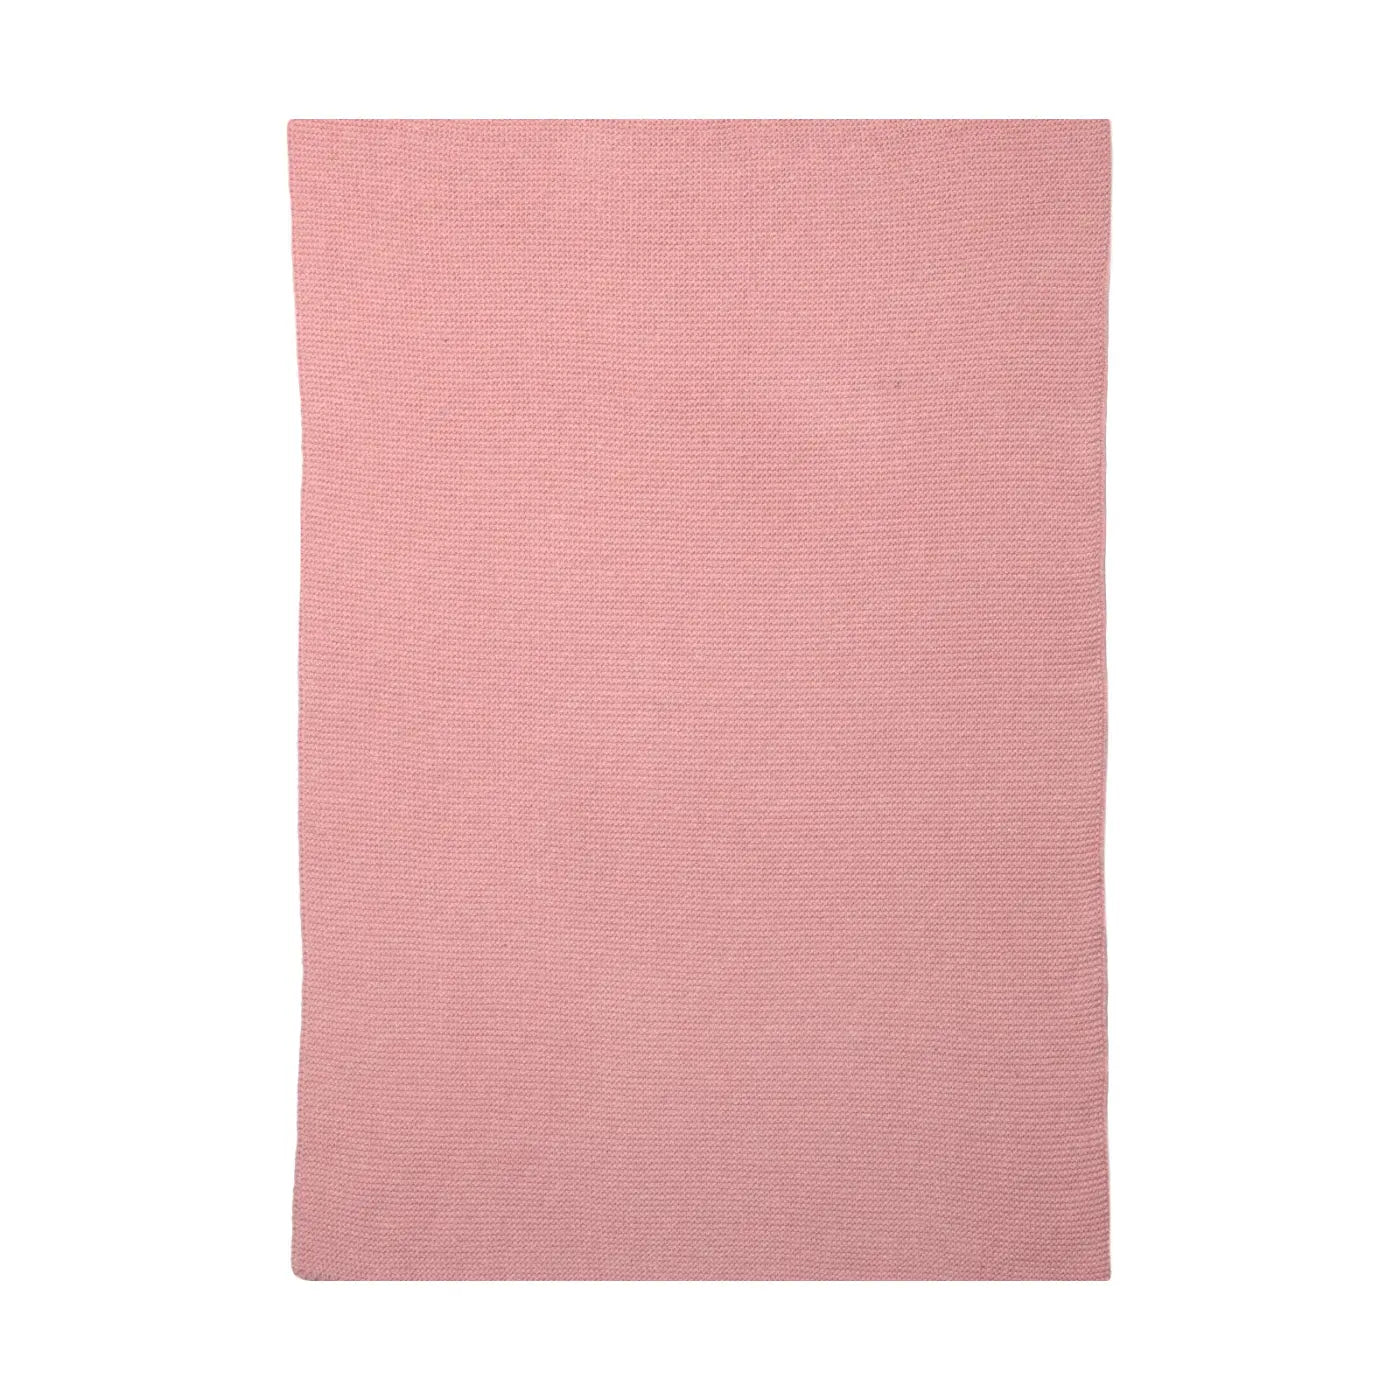 Lempi Neulos Keittiöpyyhe 40x60 Cm - Vaaleanpunainen